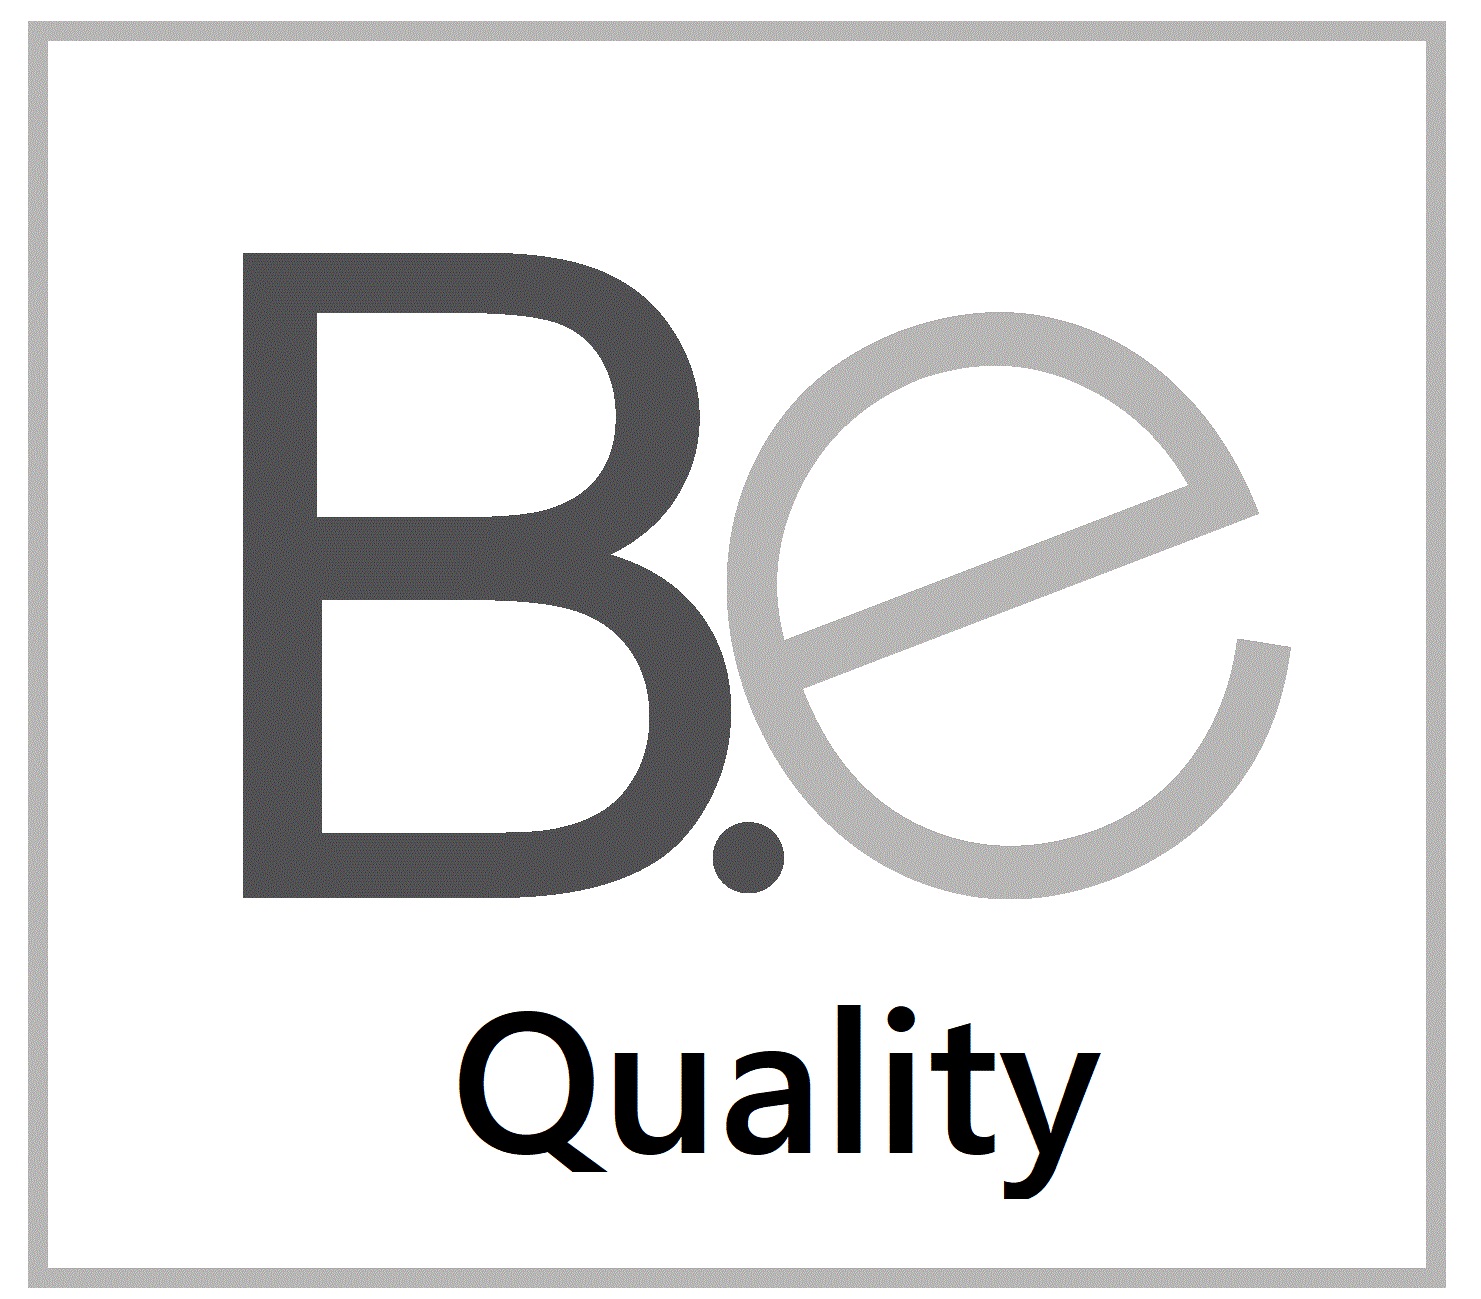 Logo of B.e Quality